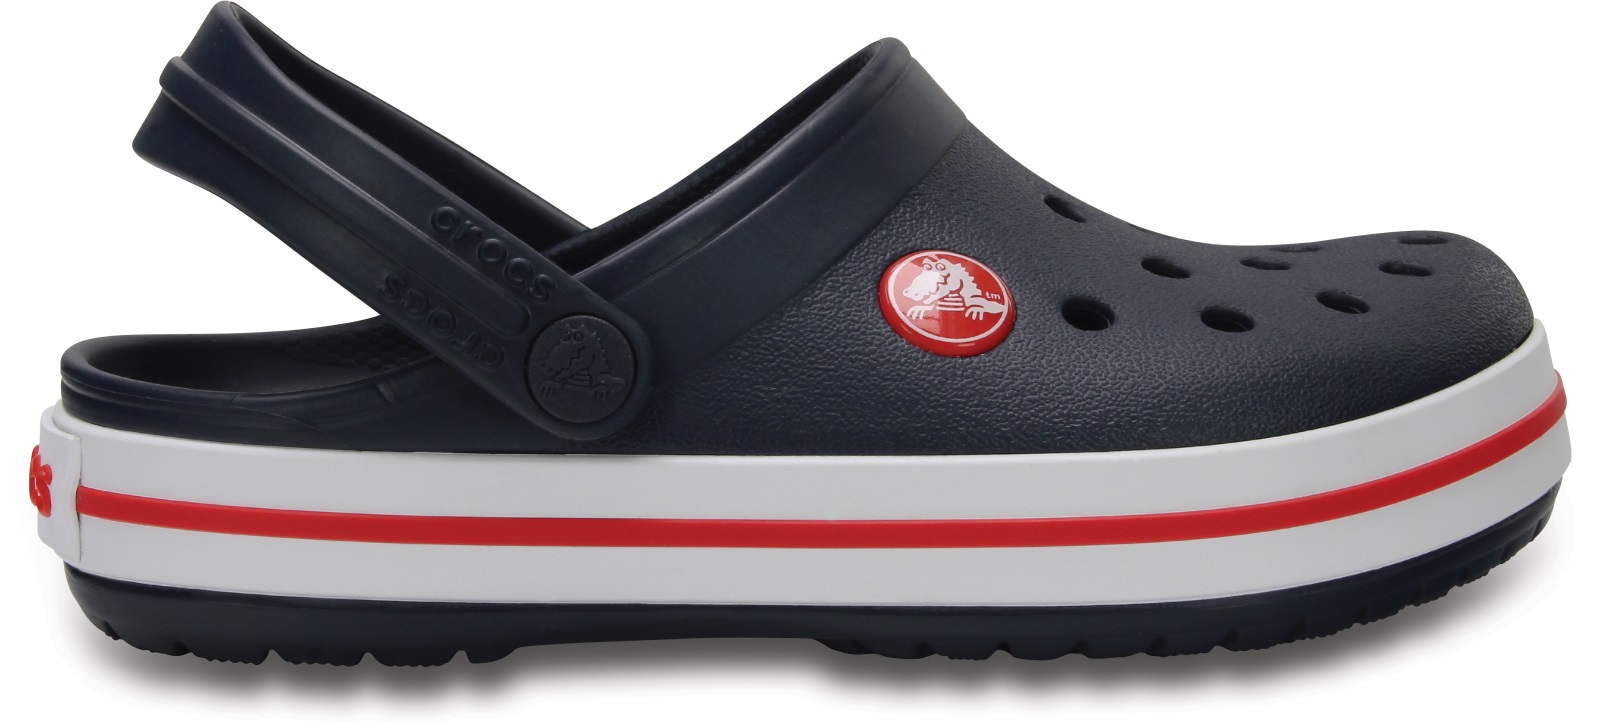 Dětské boty crocs crocband tmavě modrá/červená 32-33